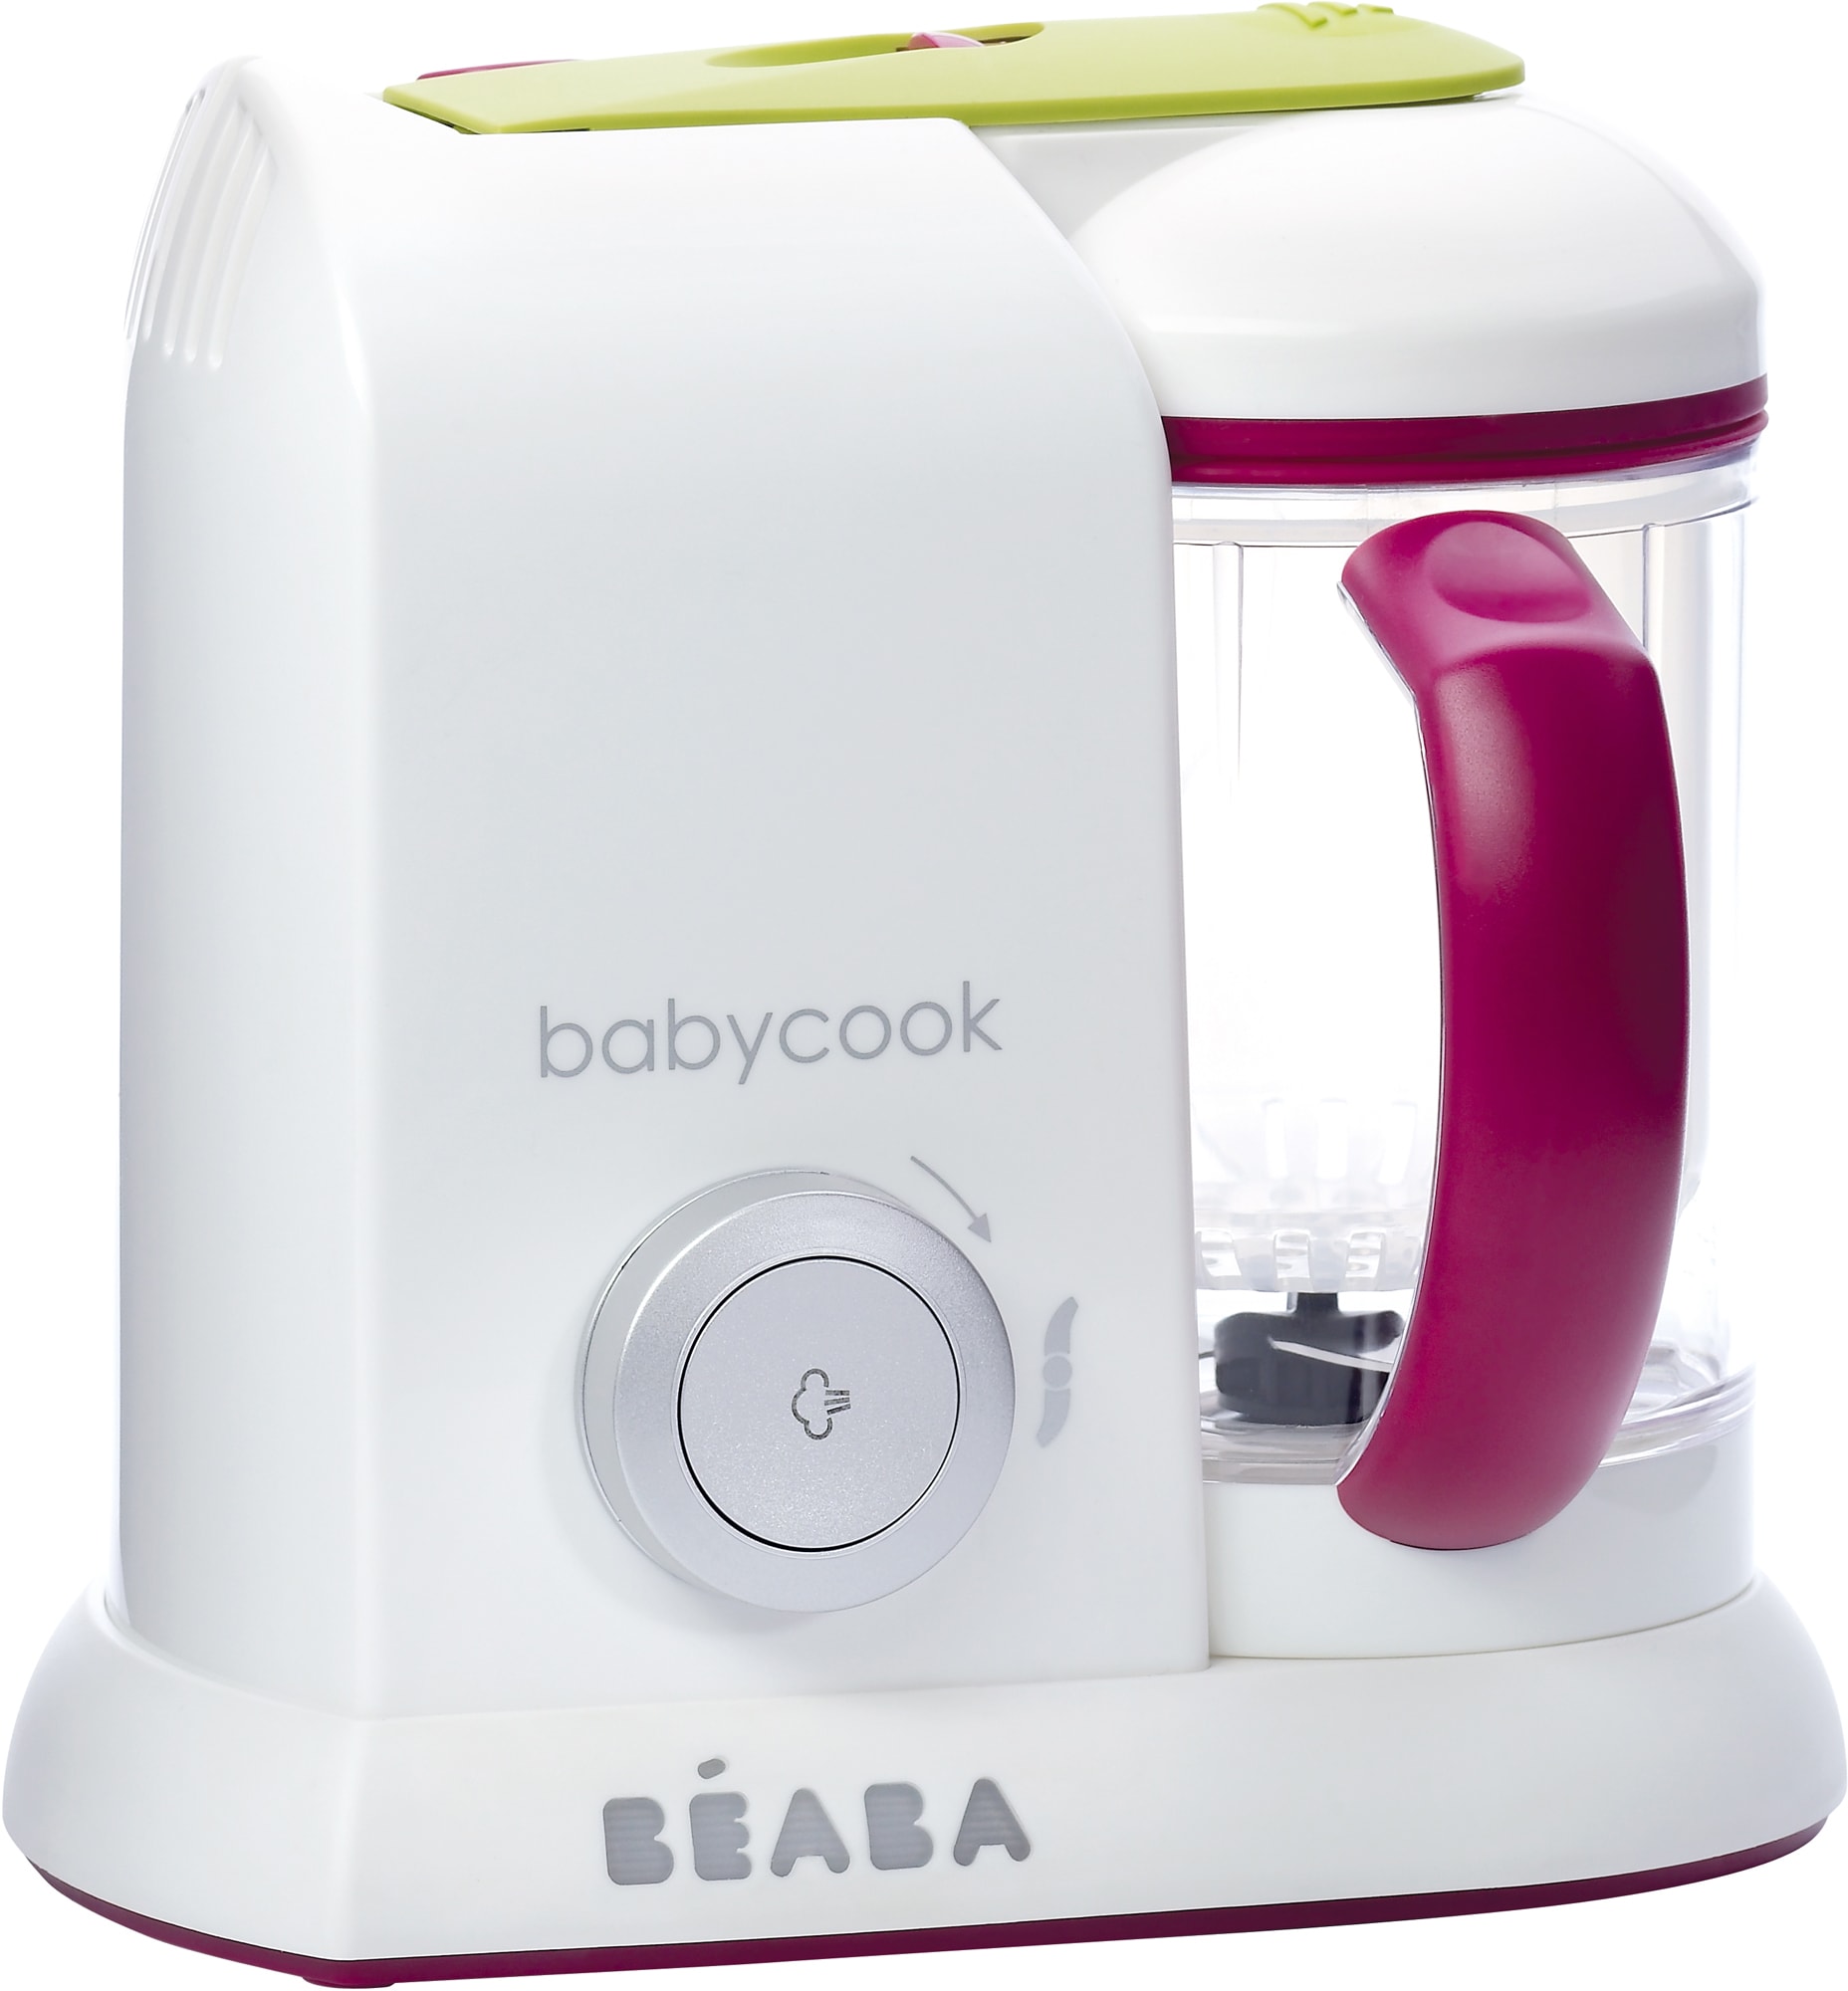 Découvrez le nouveau robot cuiseur mixeur bébé connecté Babycook Smart®